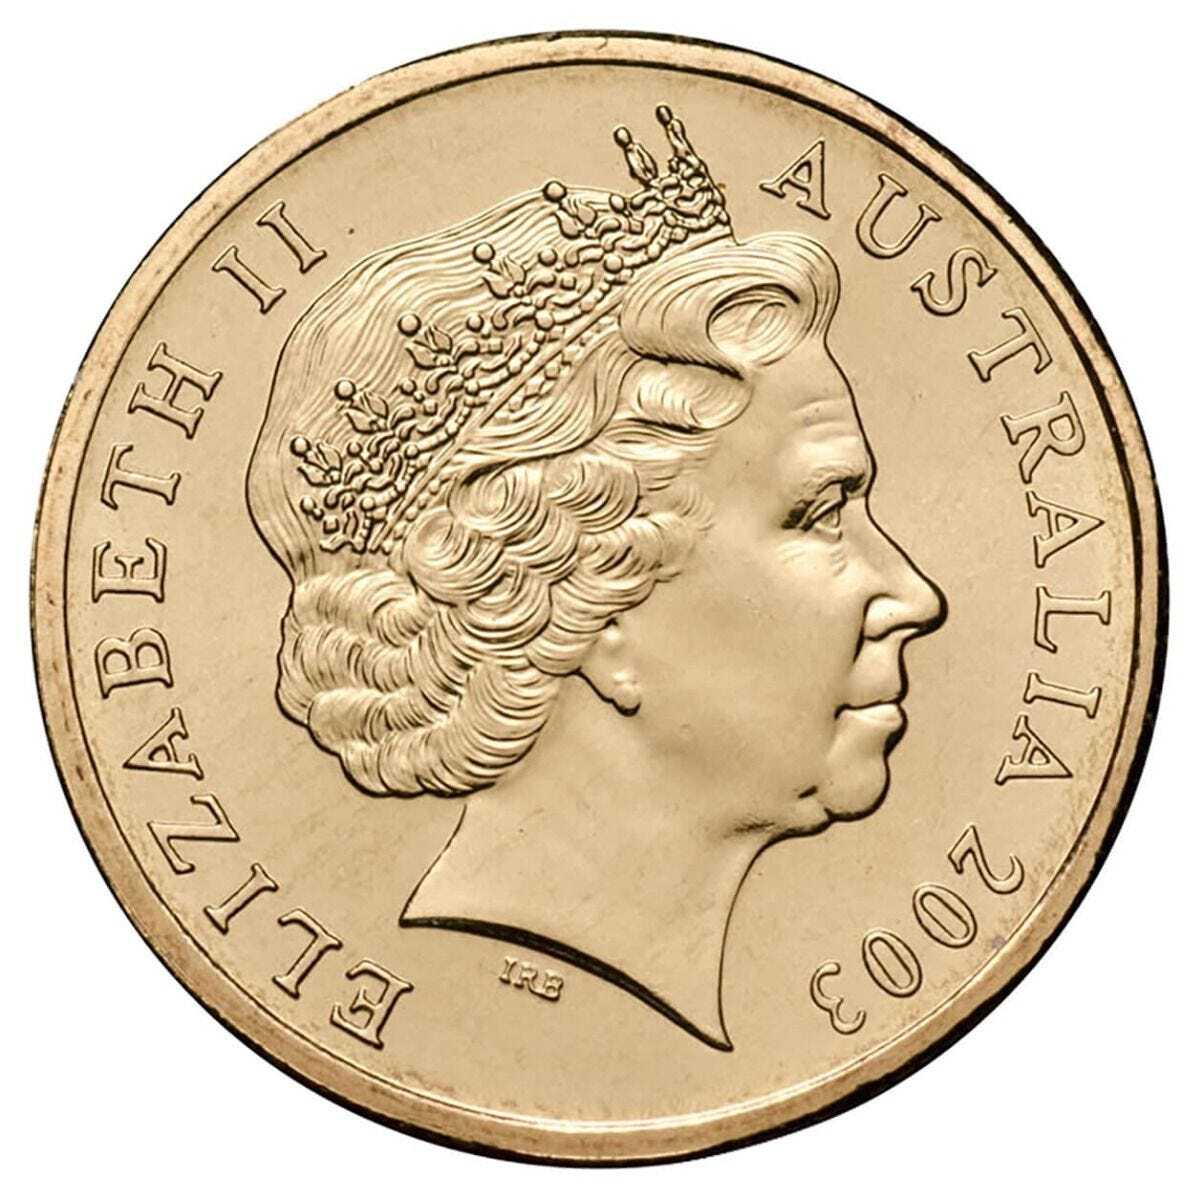 women's suffrage 2003  $1 unc coin 